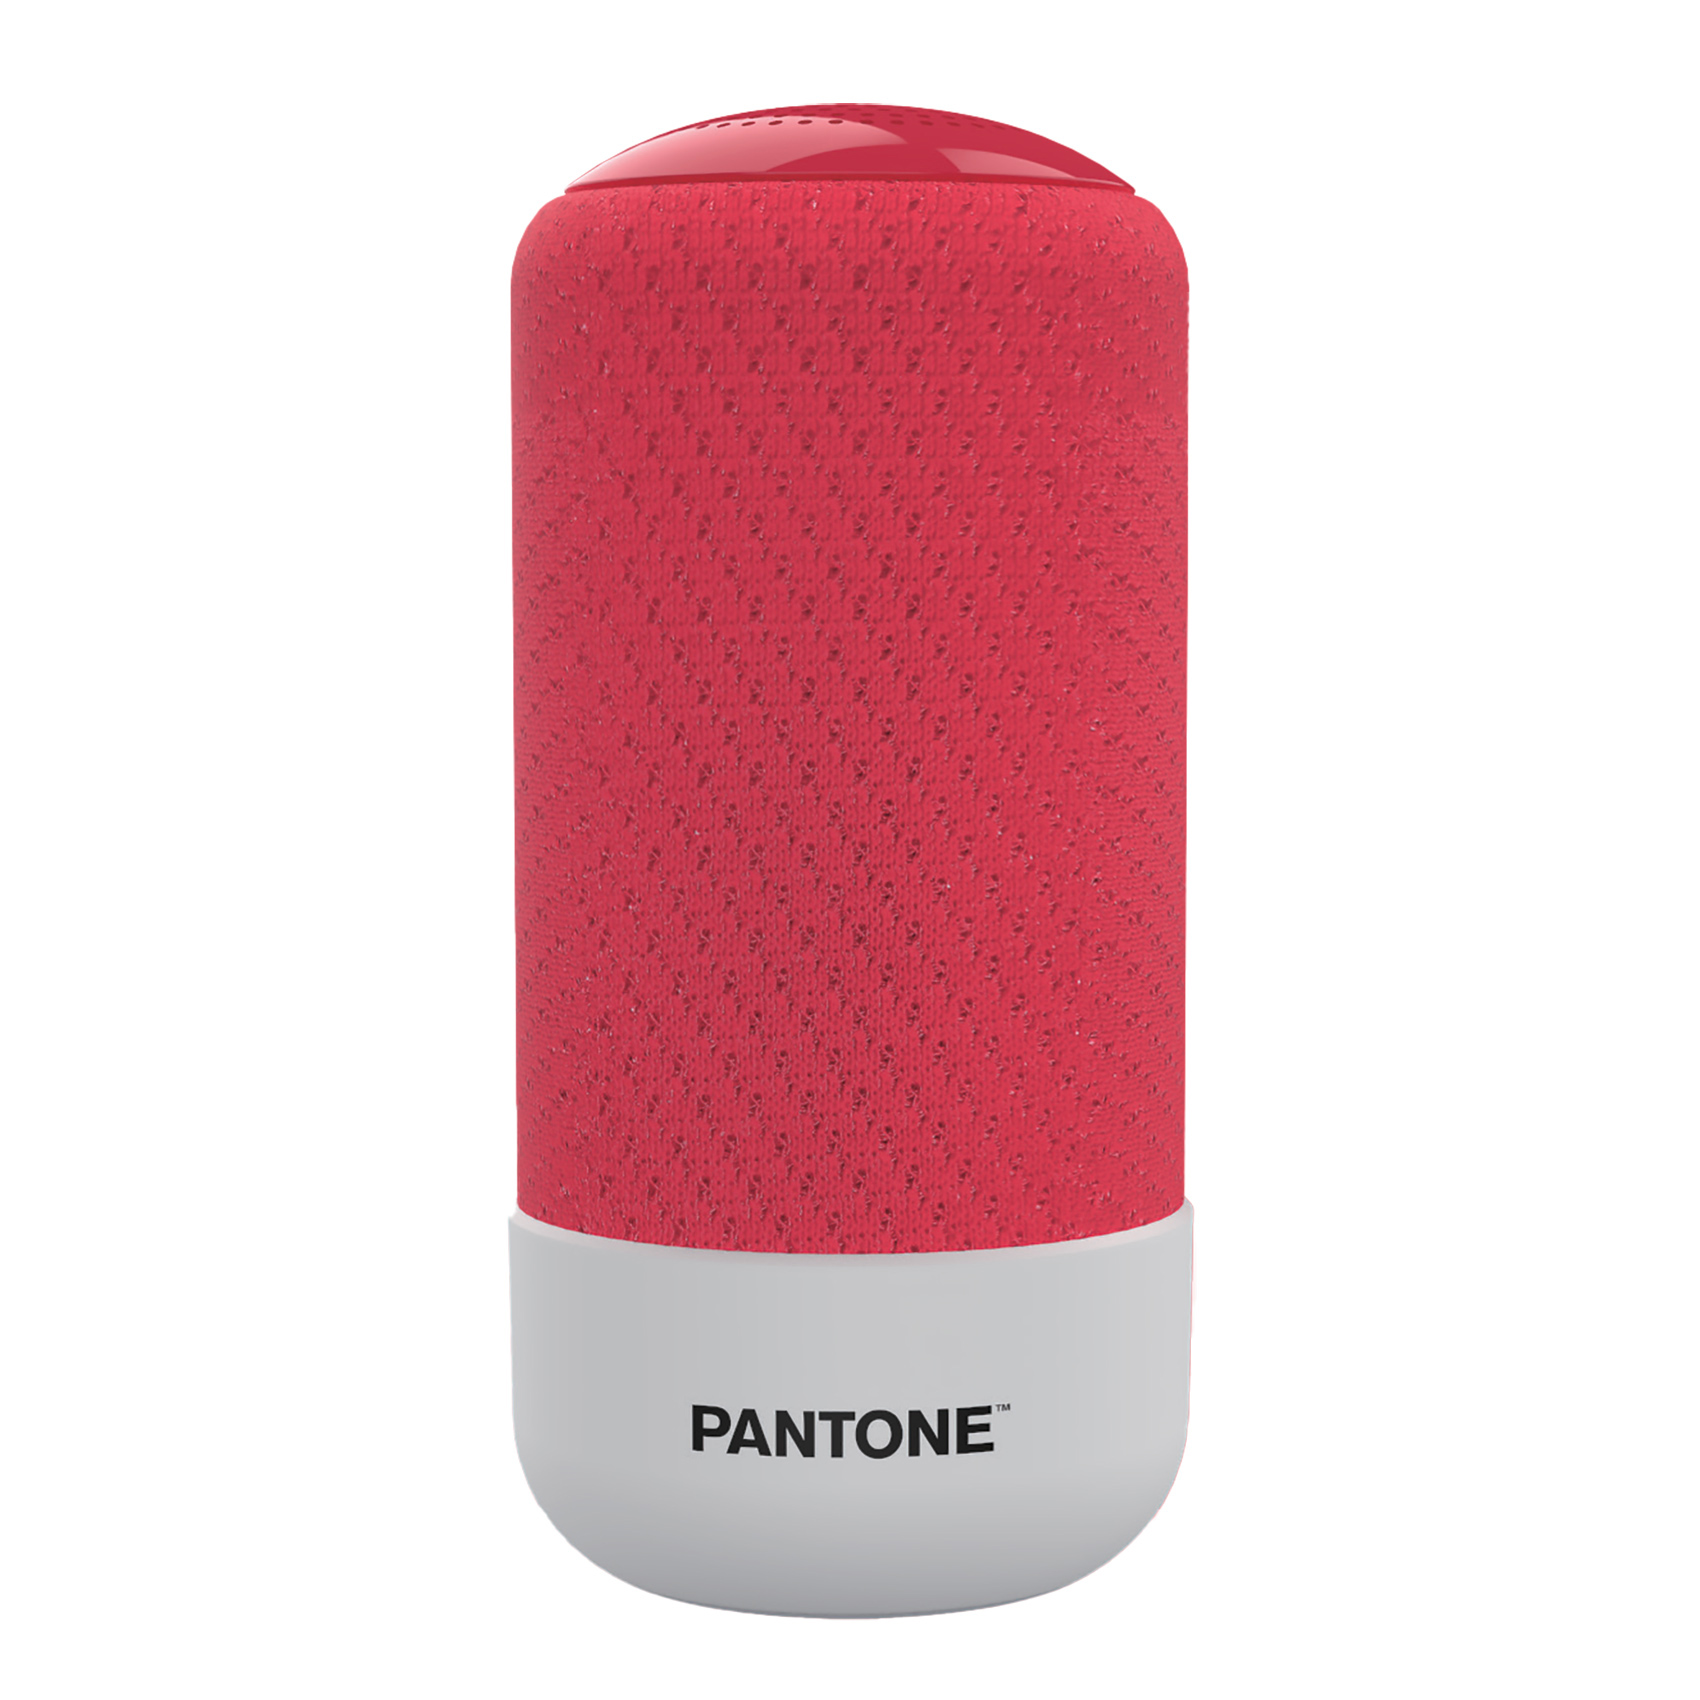 Speaker Bluetooth Pantone, , large